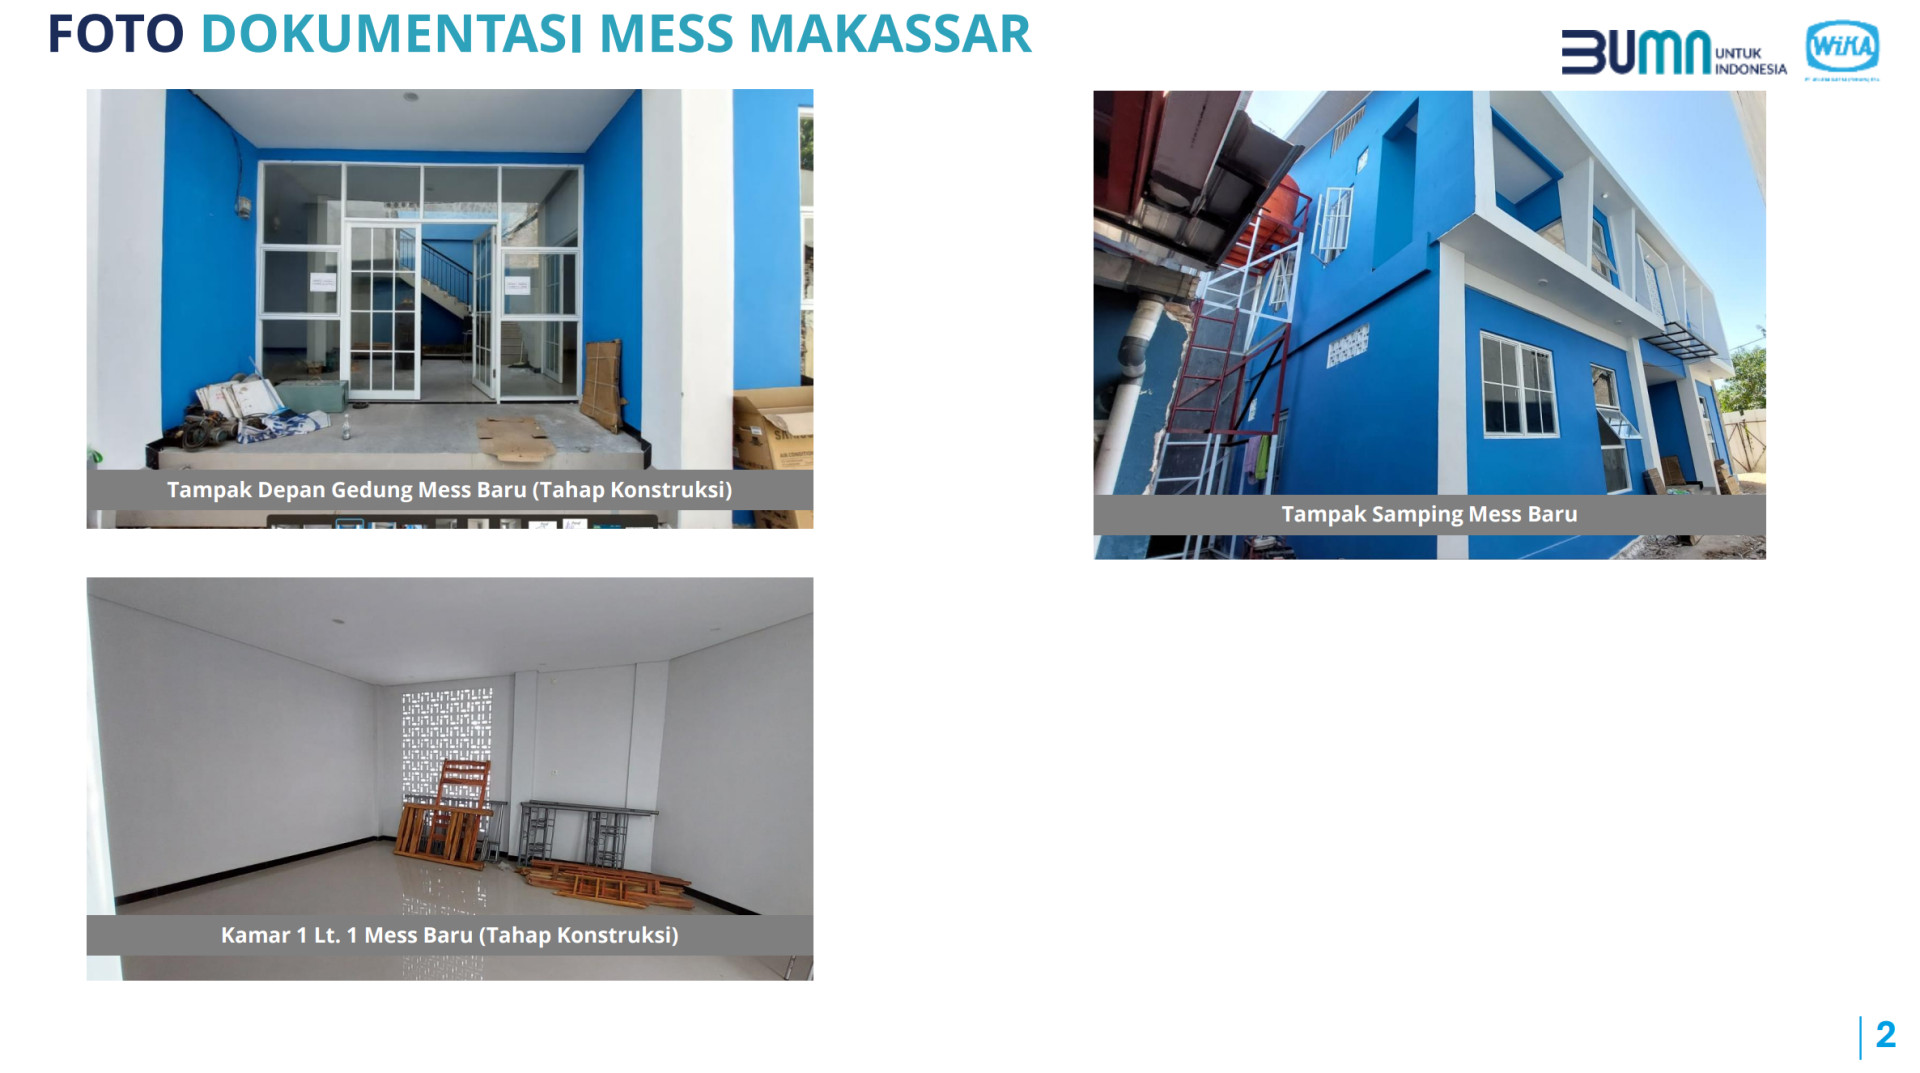 Pengumuman Lelang Aset Mess Makassar Image